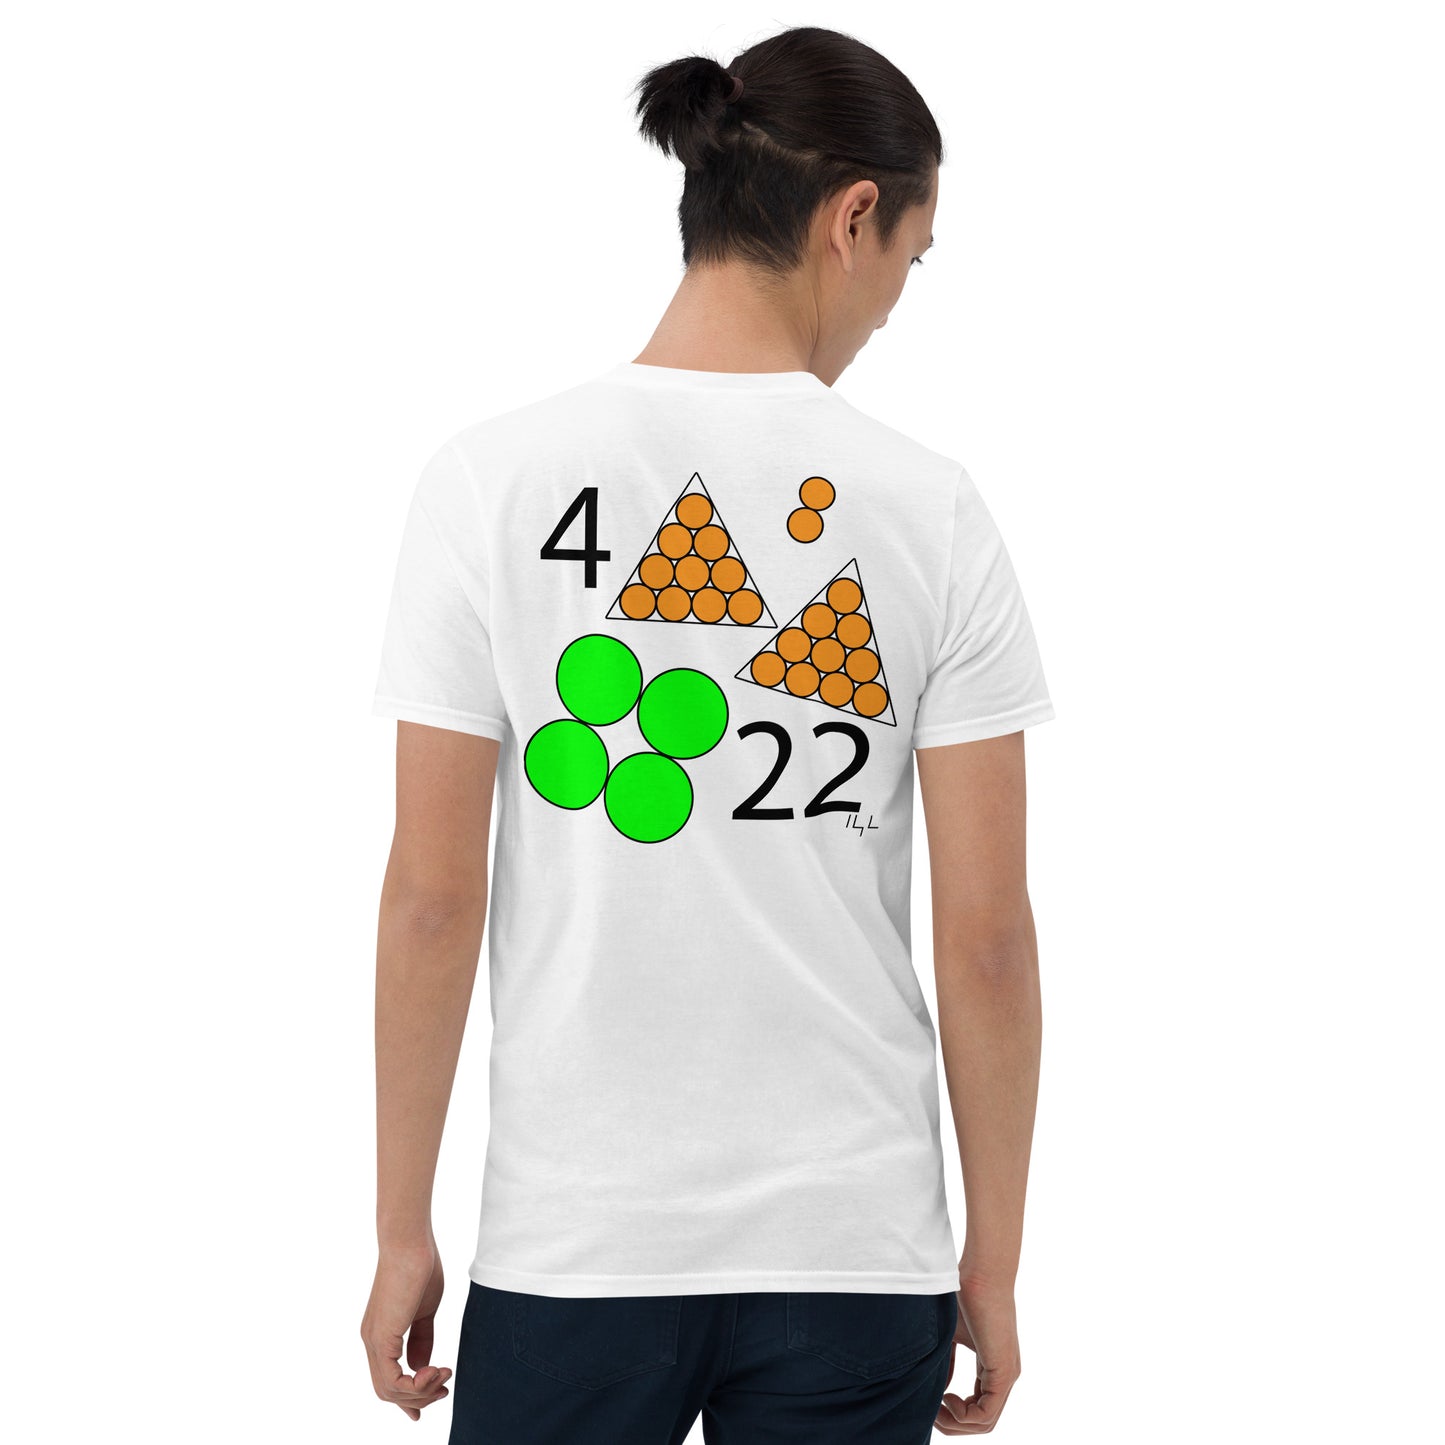 April 22nd Green T-Shirt at 4:22 0422